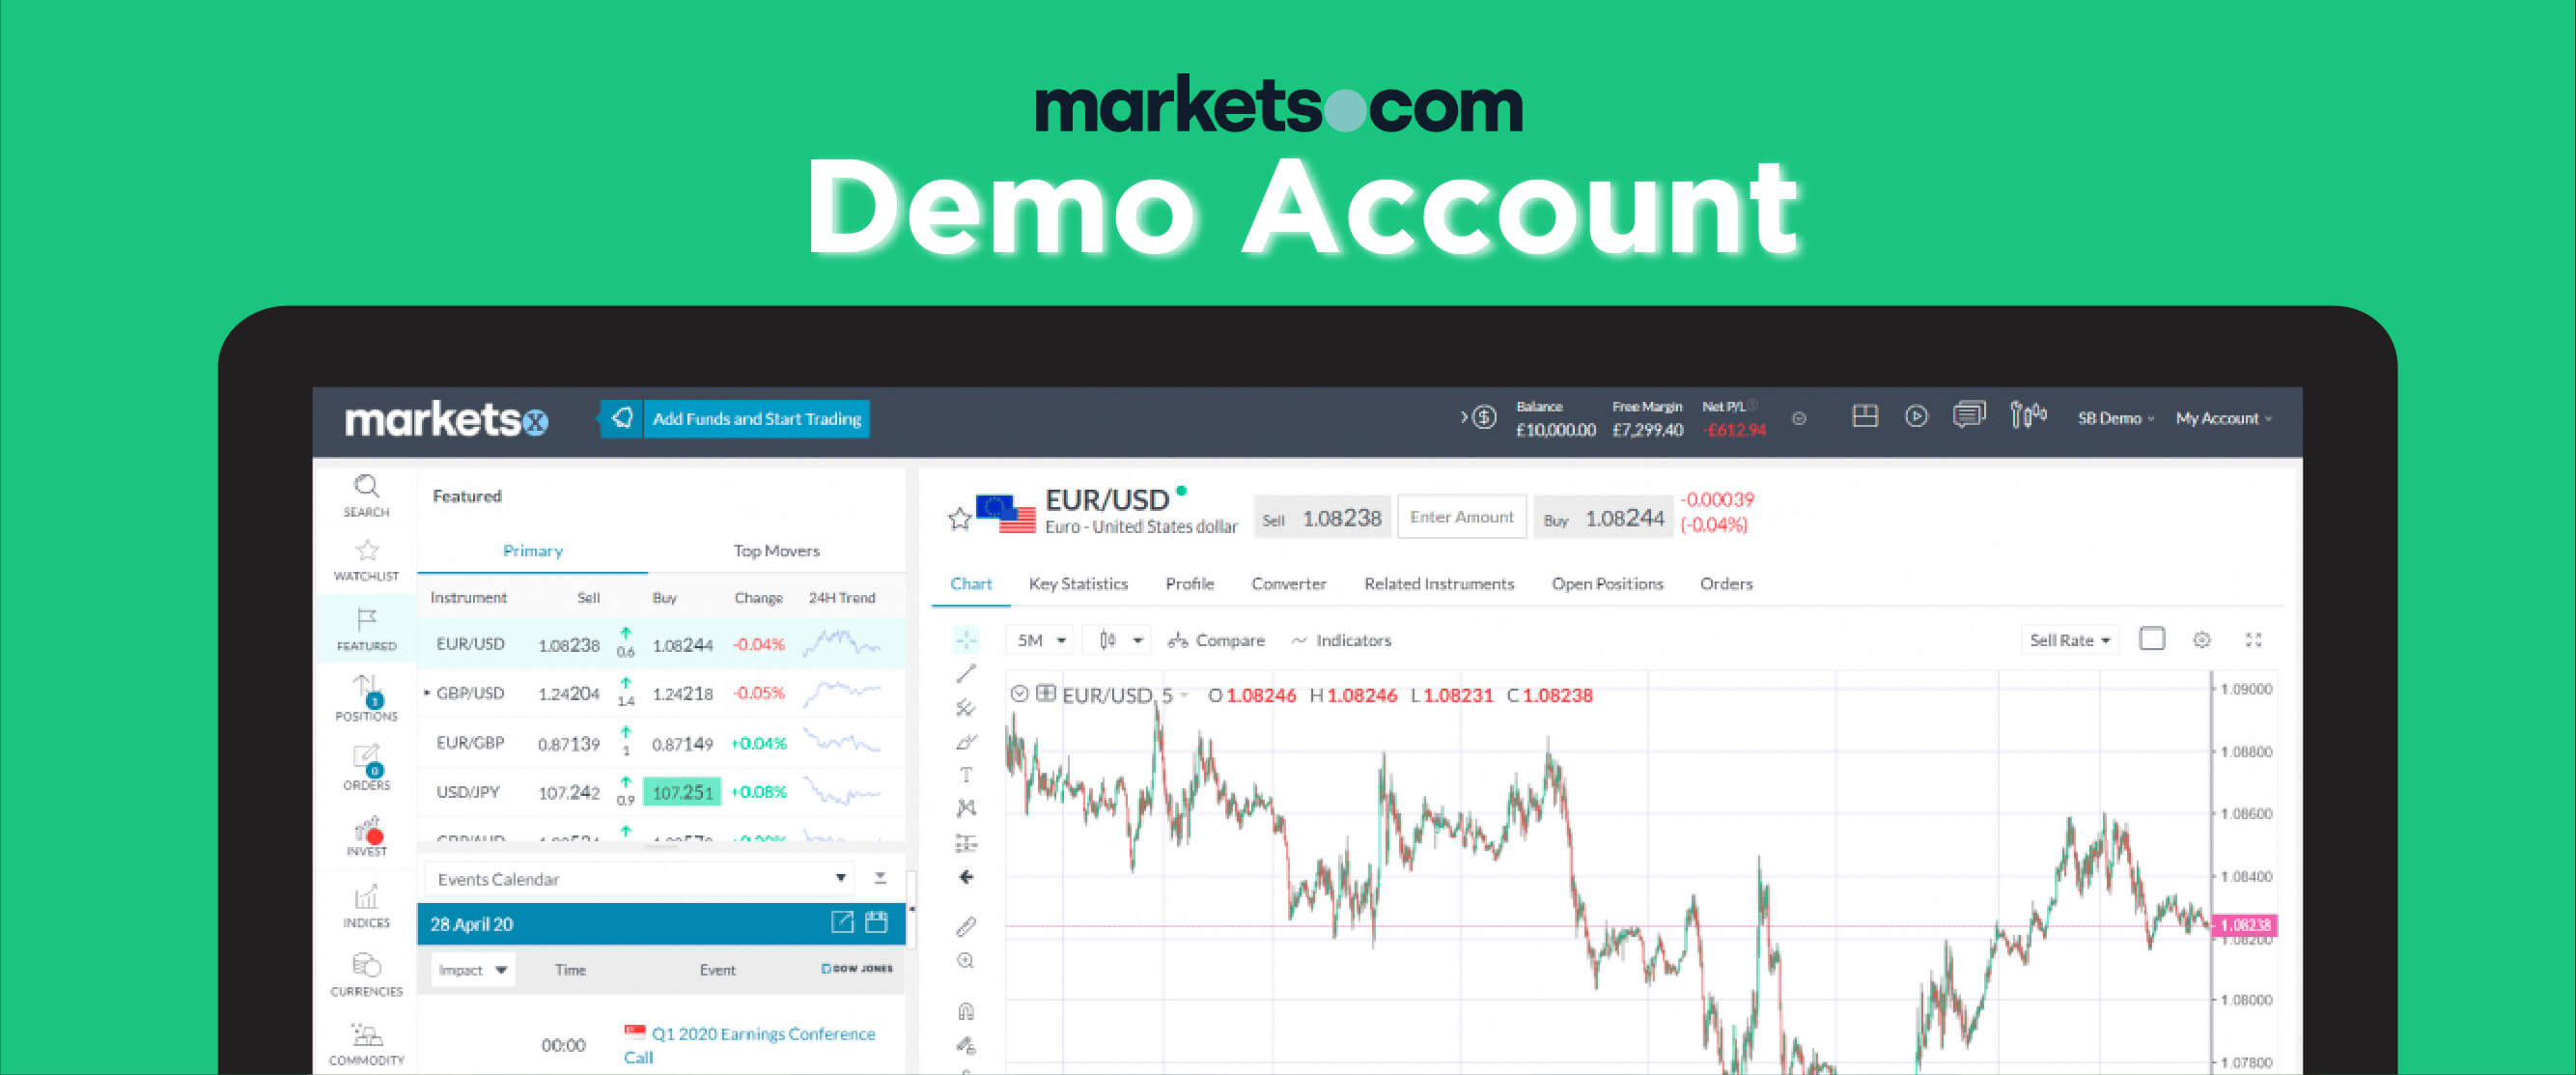 Markets.com Demo Account